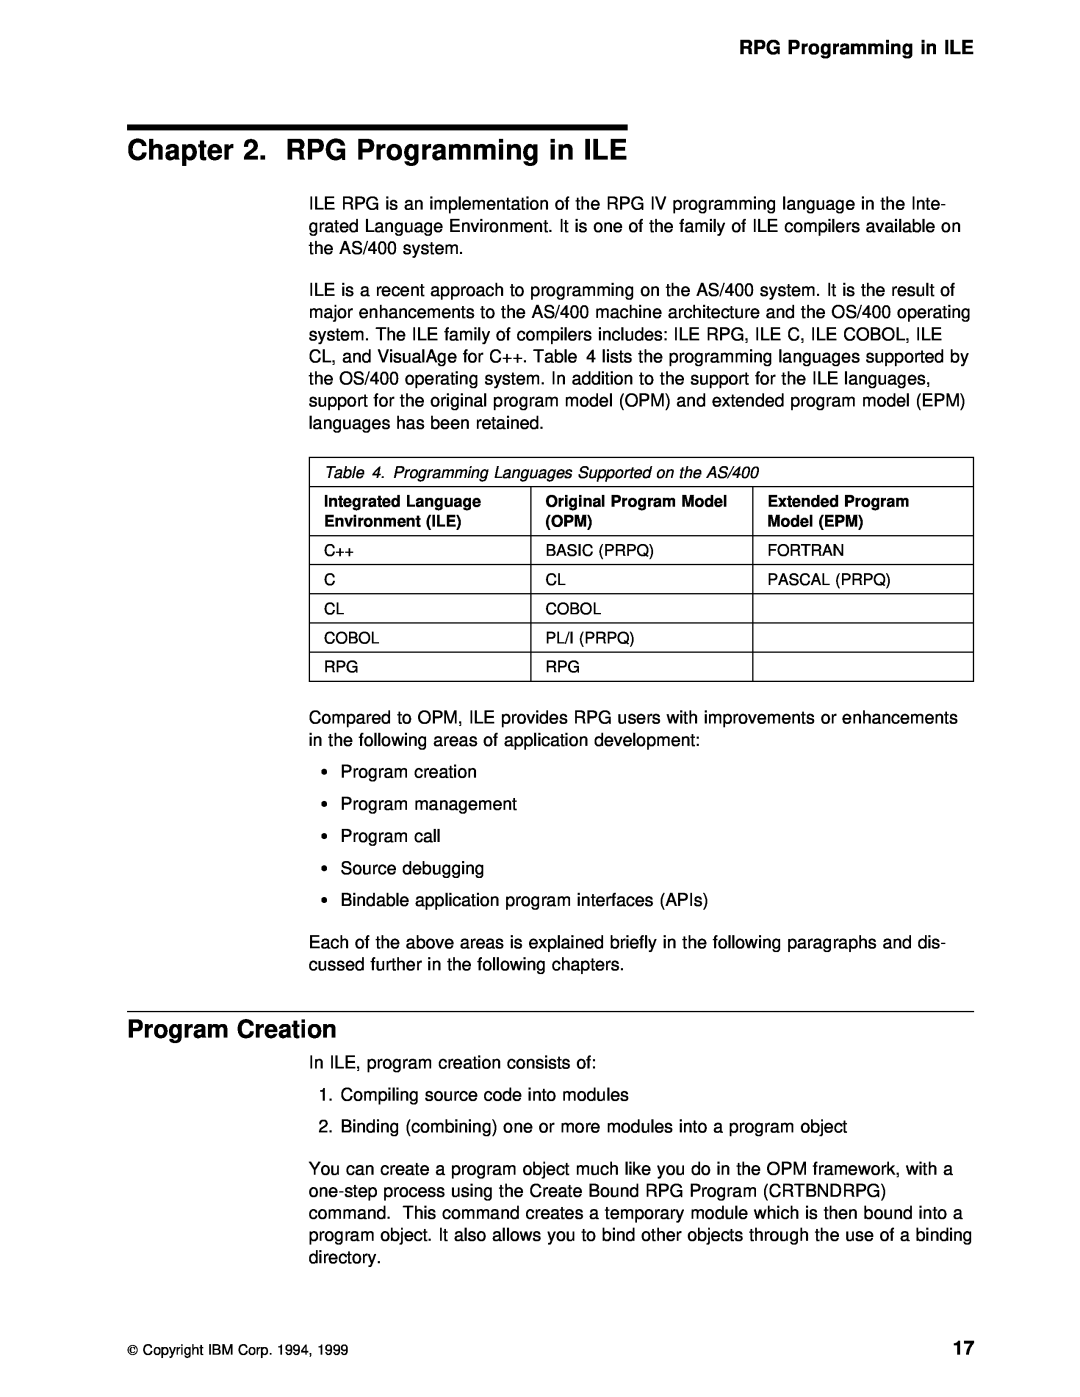 IBM AS/400 manual RPG Programming in ILE, Program Creation 